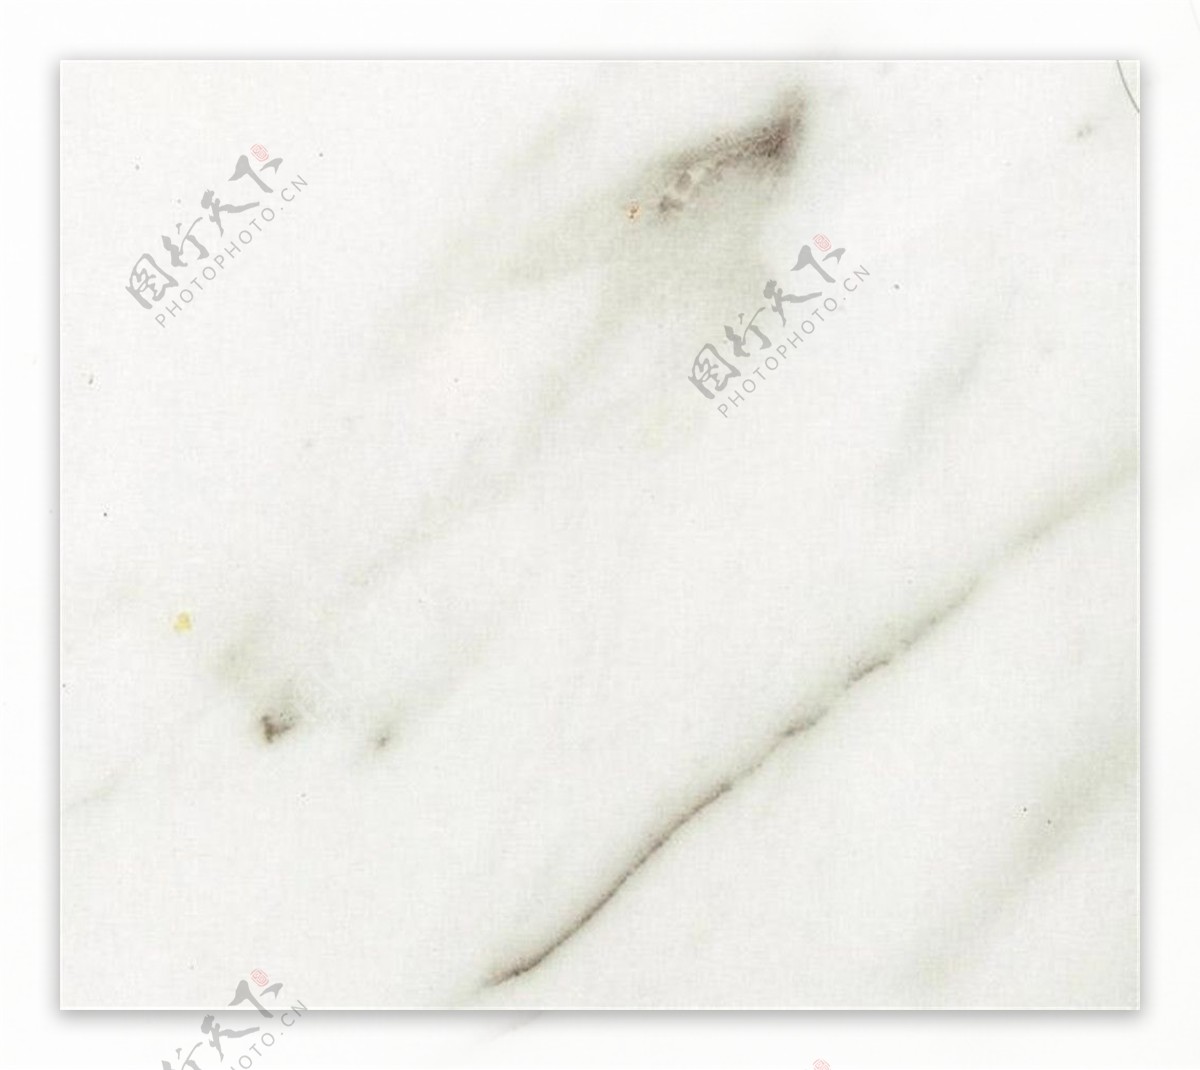 白色棉花大理石问纹材质贴图